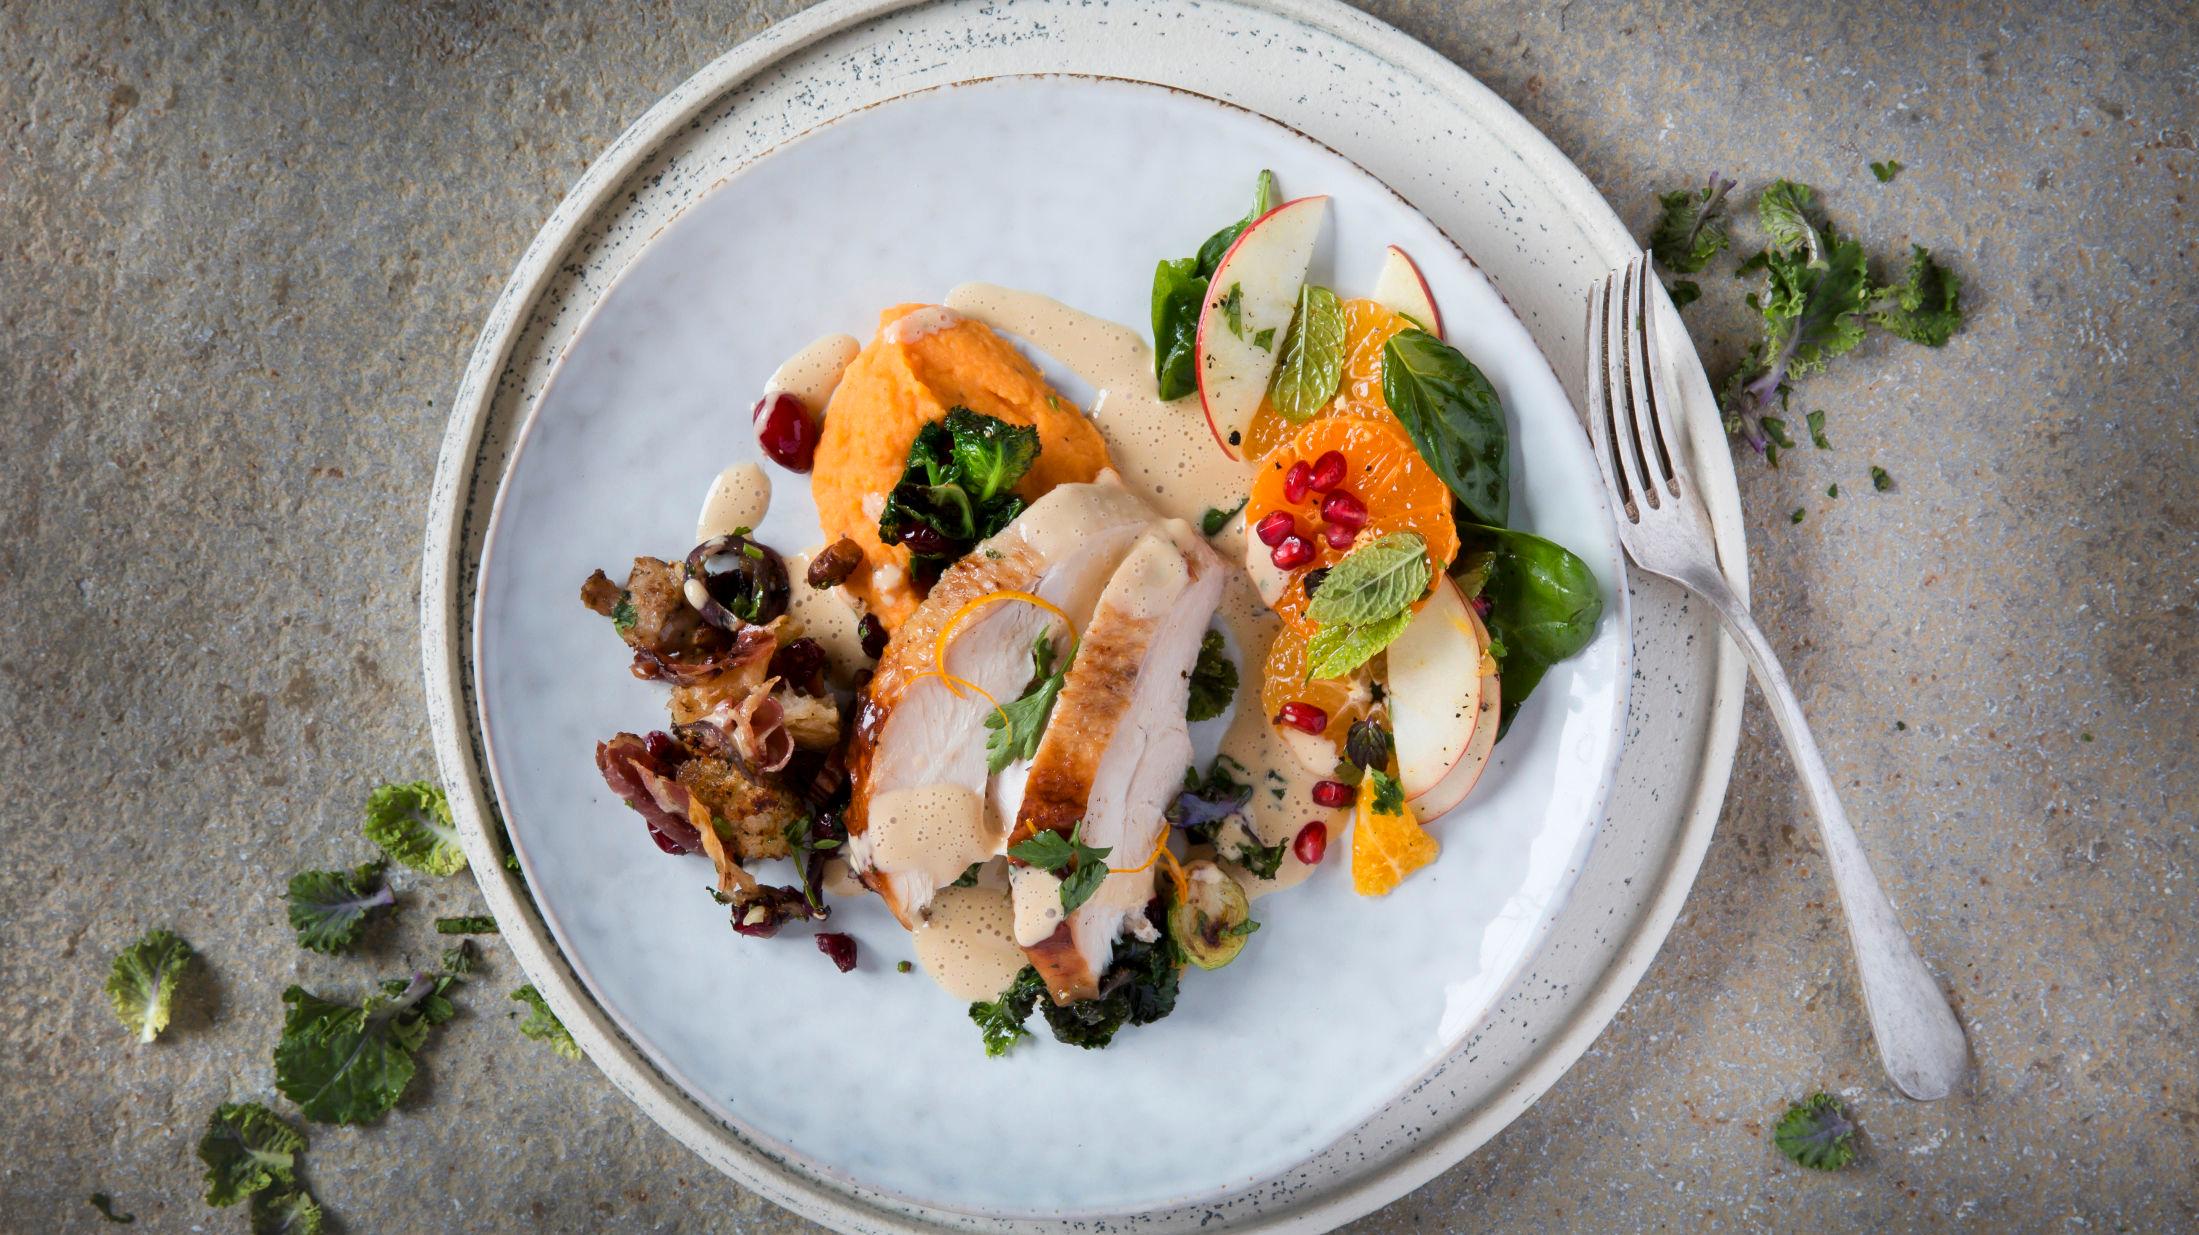 THANKSGIVINGMIDDAG: Helstekt kalkun med stuffing, søtpotetmos, fløtesaus, rosenkål, en frisk salat og varme tranebær. Foto: Christian Brun